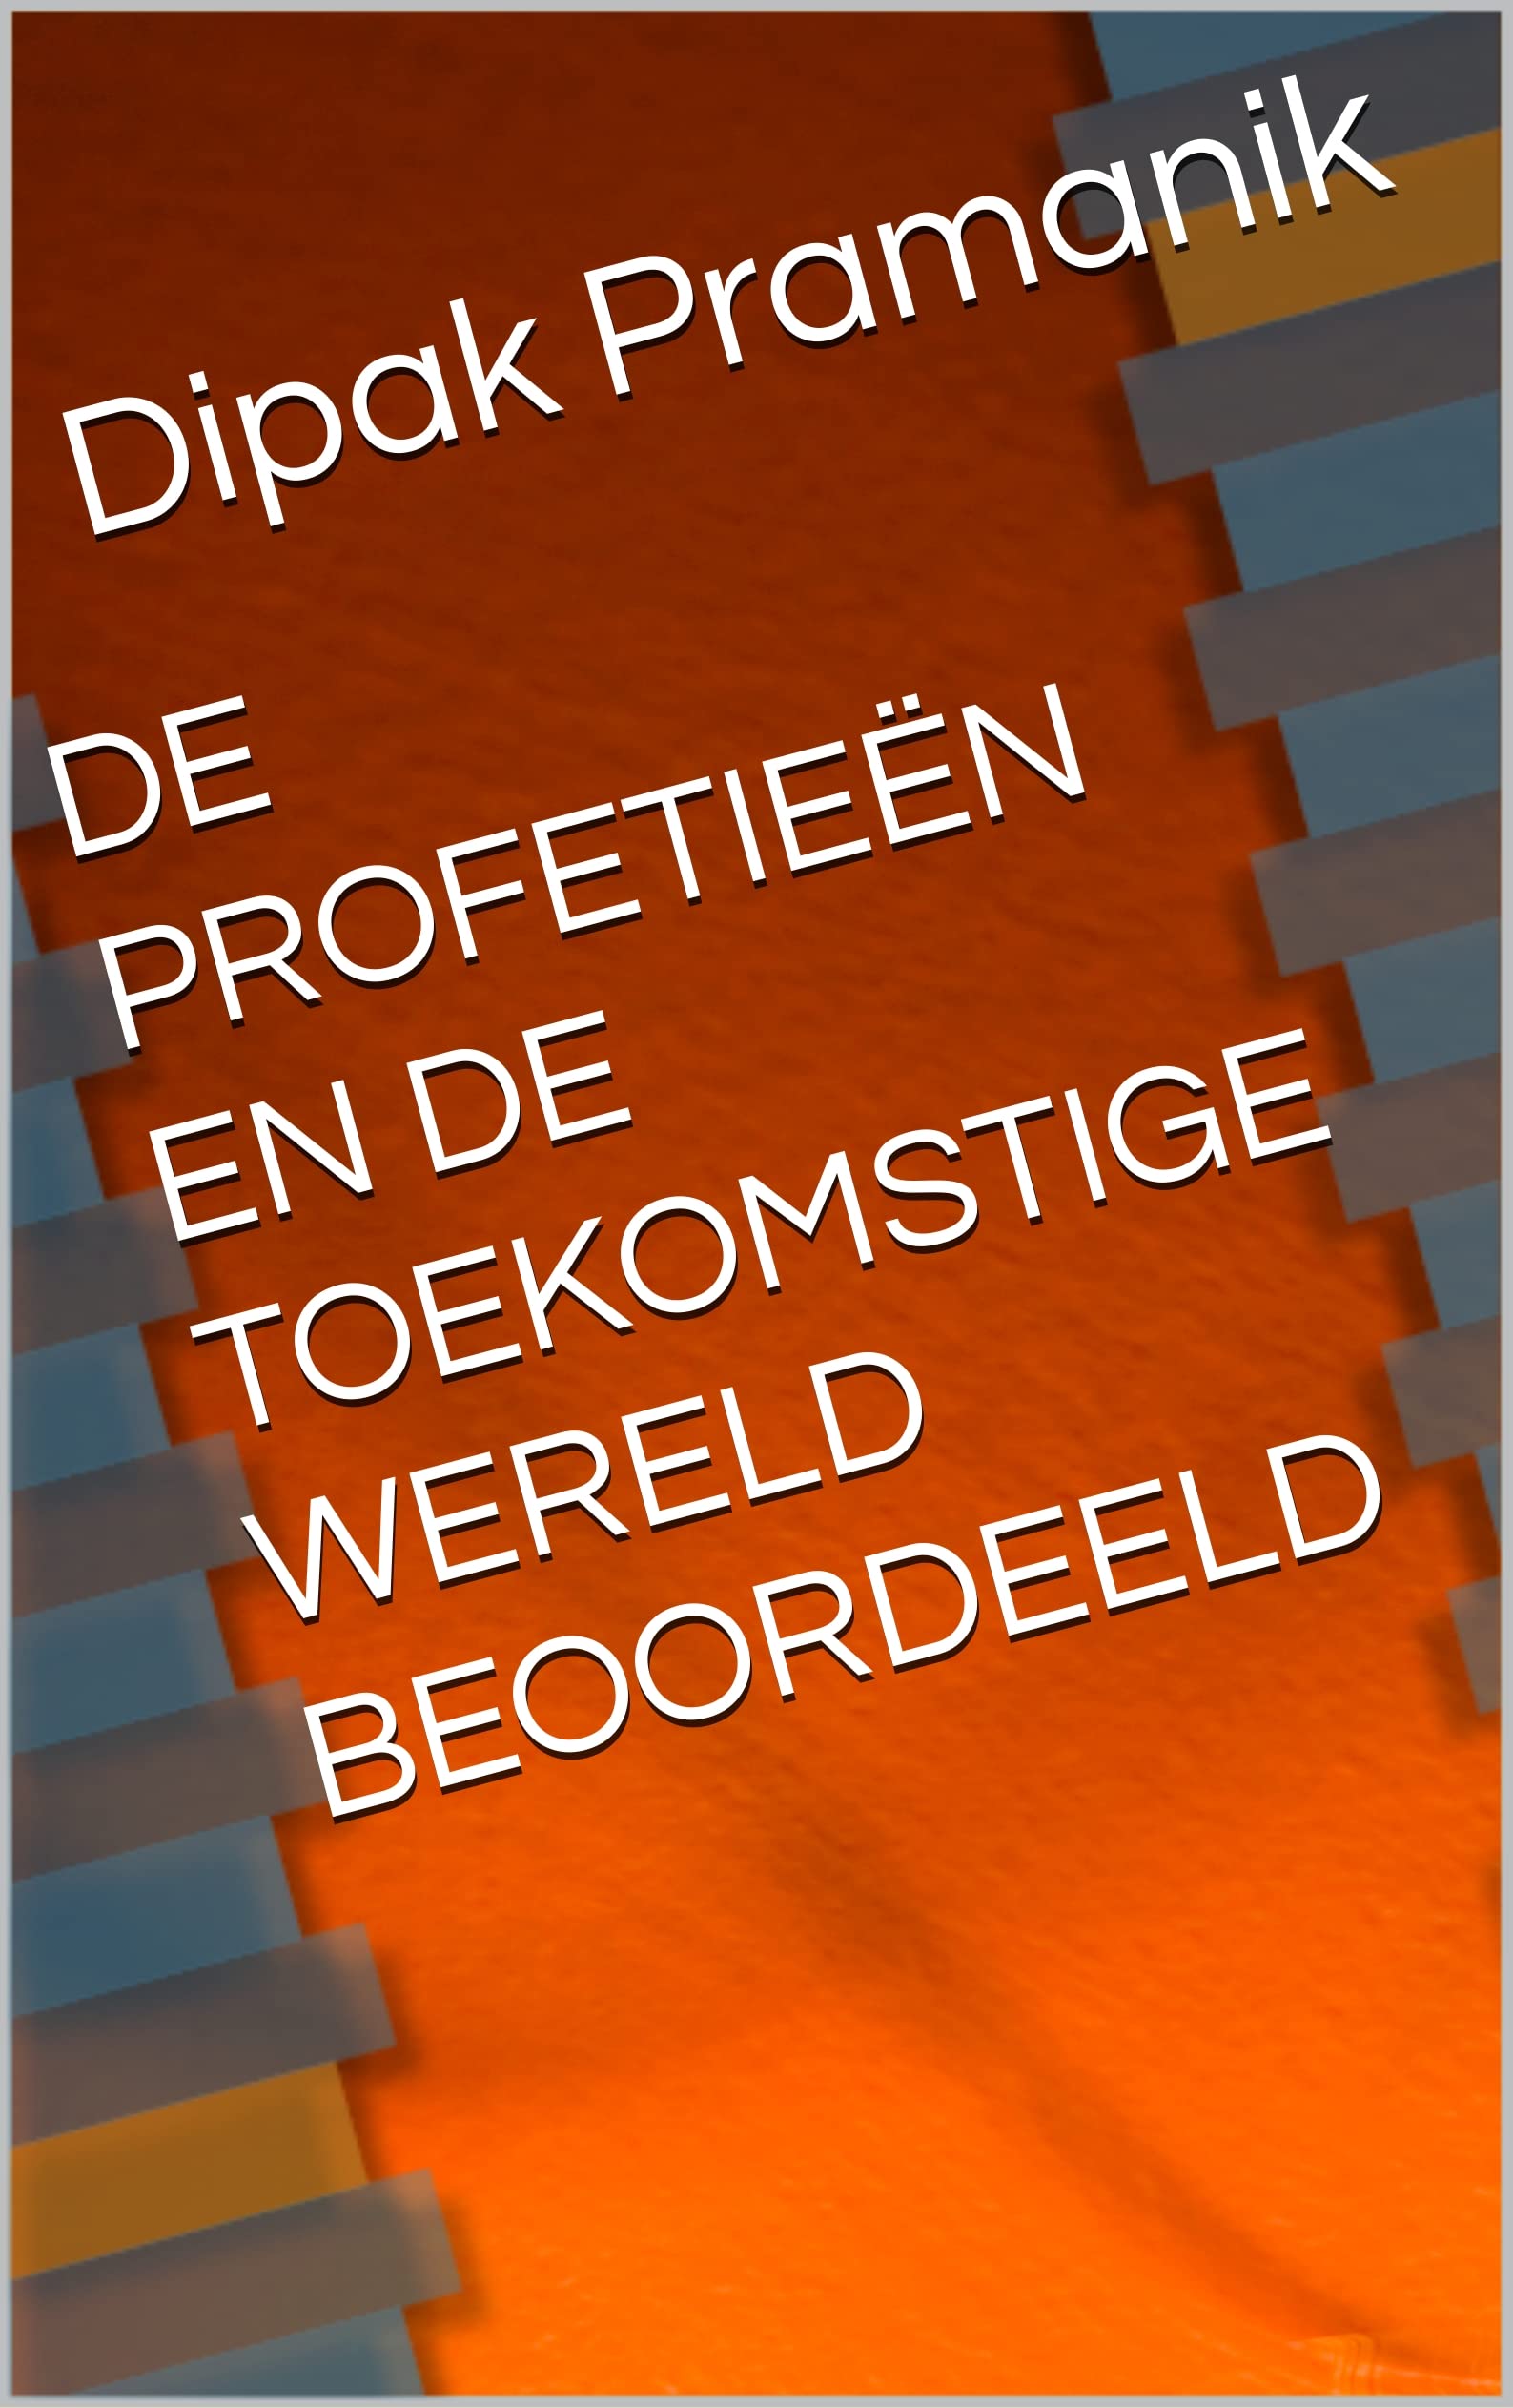 DE PROFETIEËN EN DE TOEKOMSTIGE WERELD BEOORDEELD (Dutch Edition)